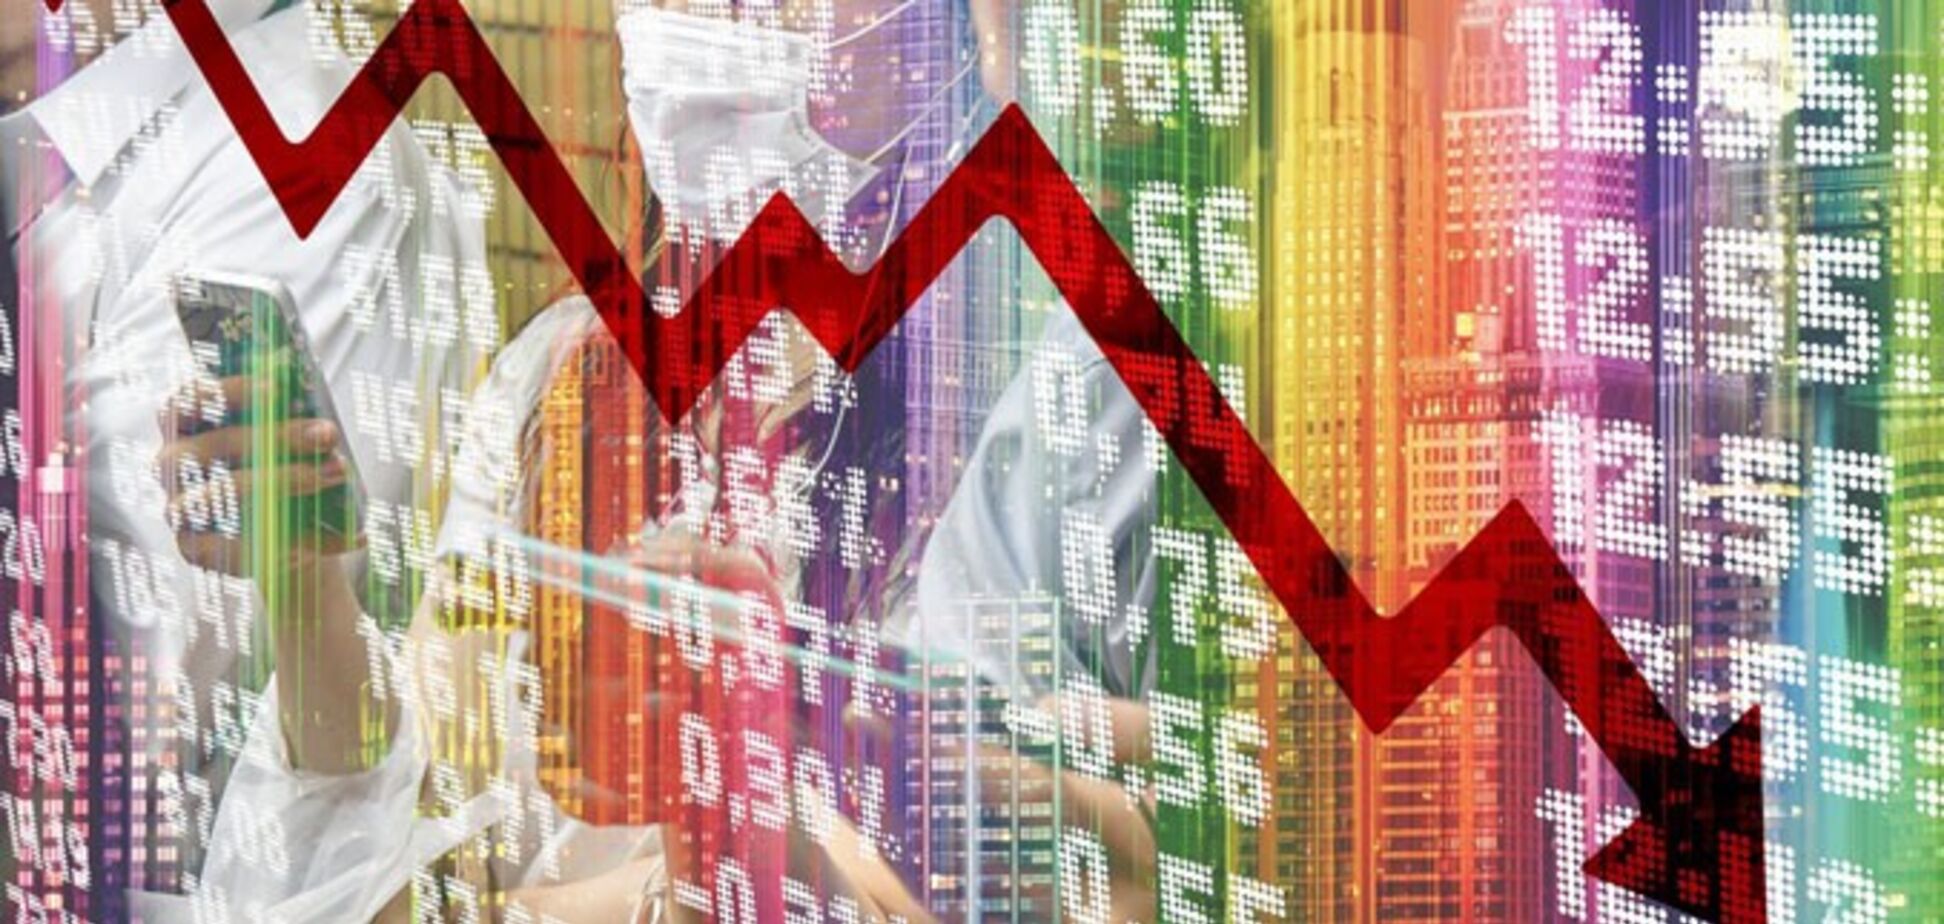 Для экономики 2020 год будет утерян: Saxo Bank сделал неутешительный прогноз